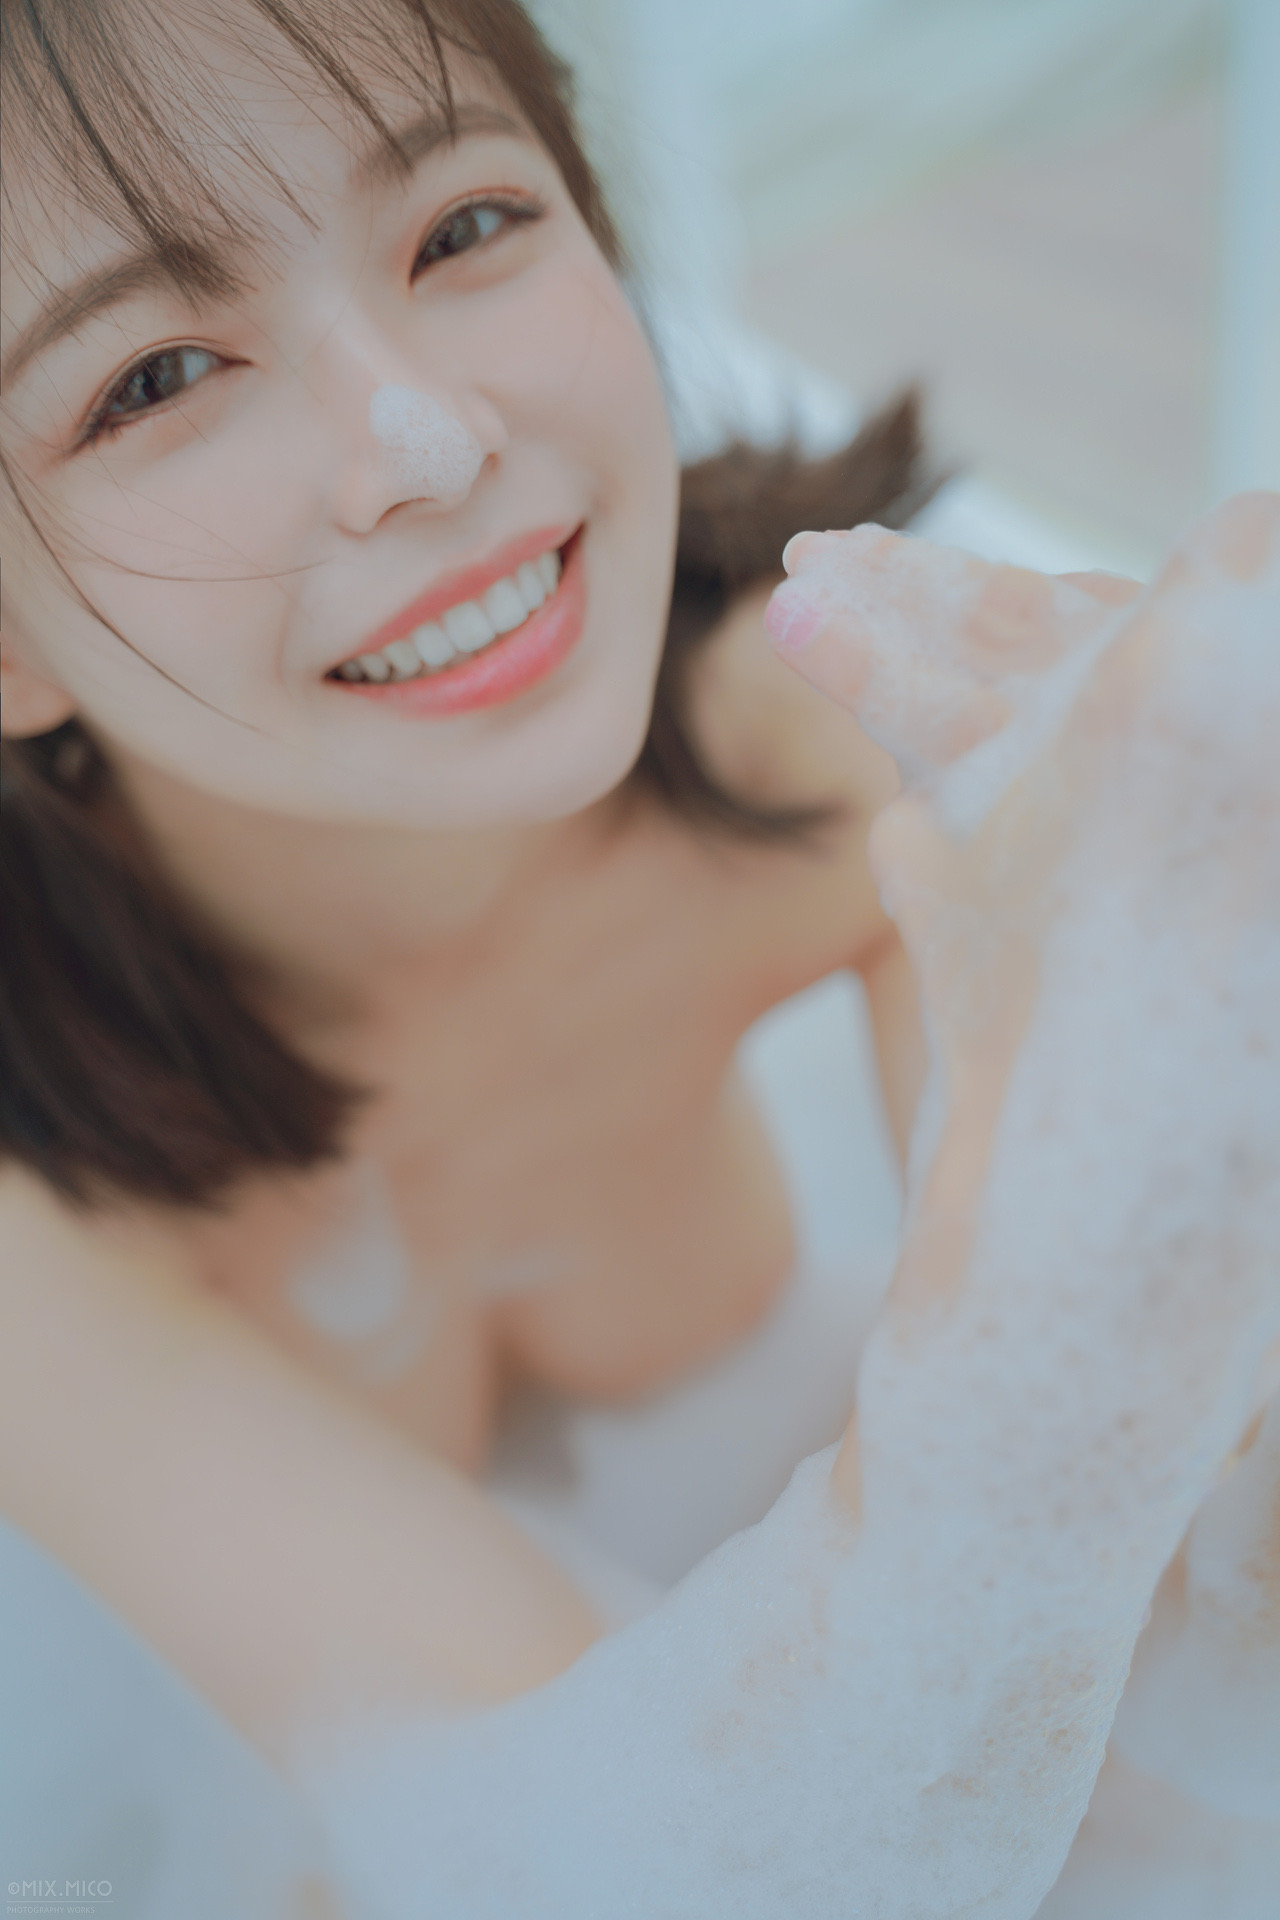 People 1280x1920 model Chinese model women Asian soap bubble baths bokeh implied nude pale